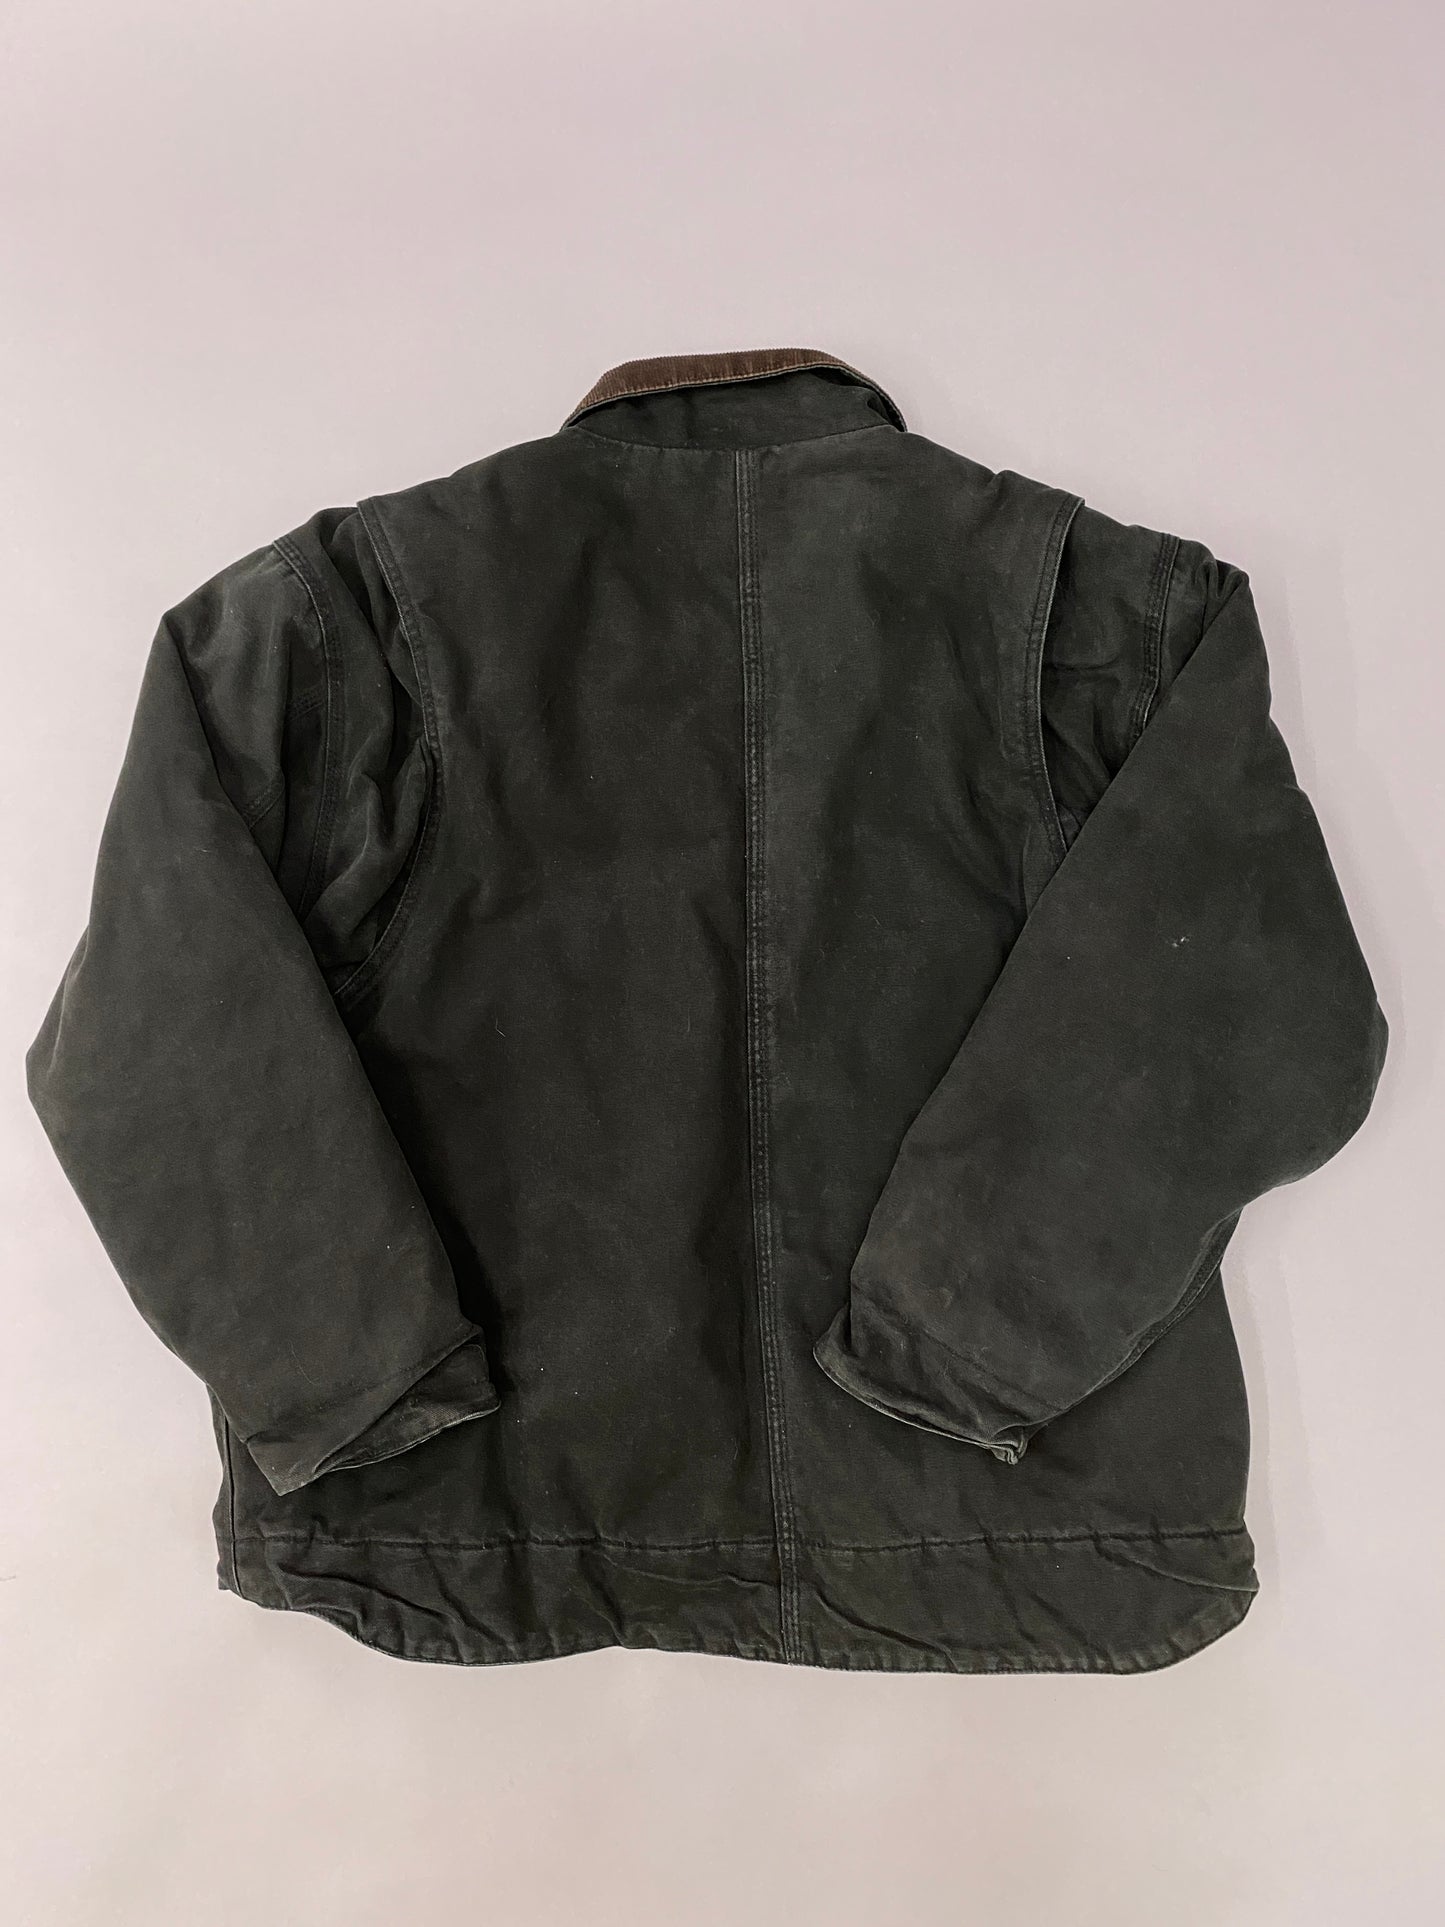 Schindler 90's Workwear Jacket